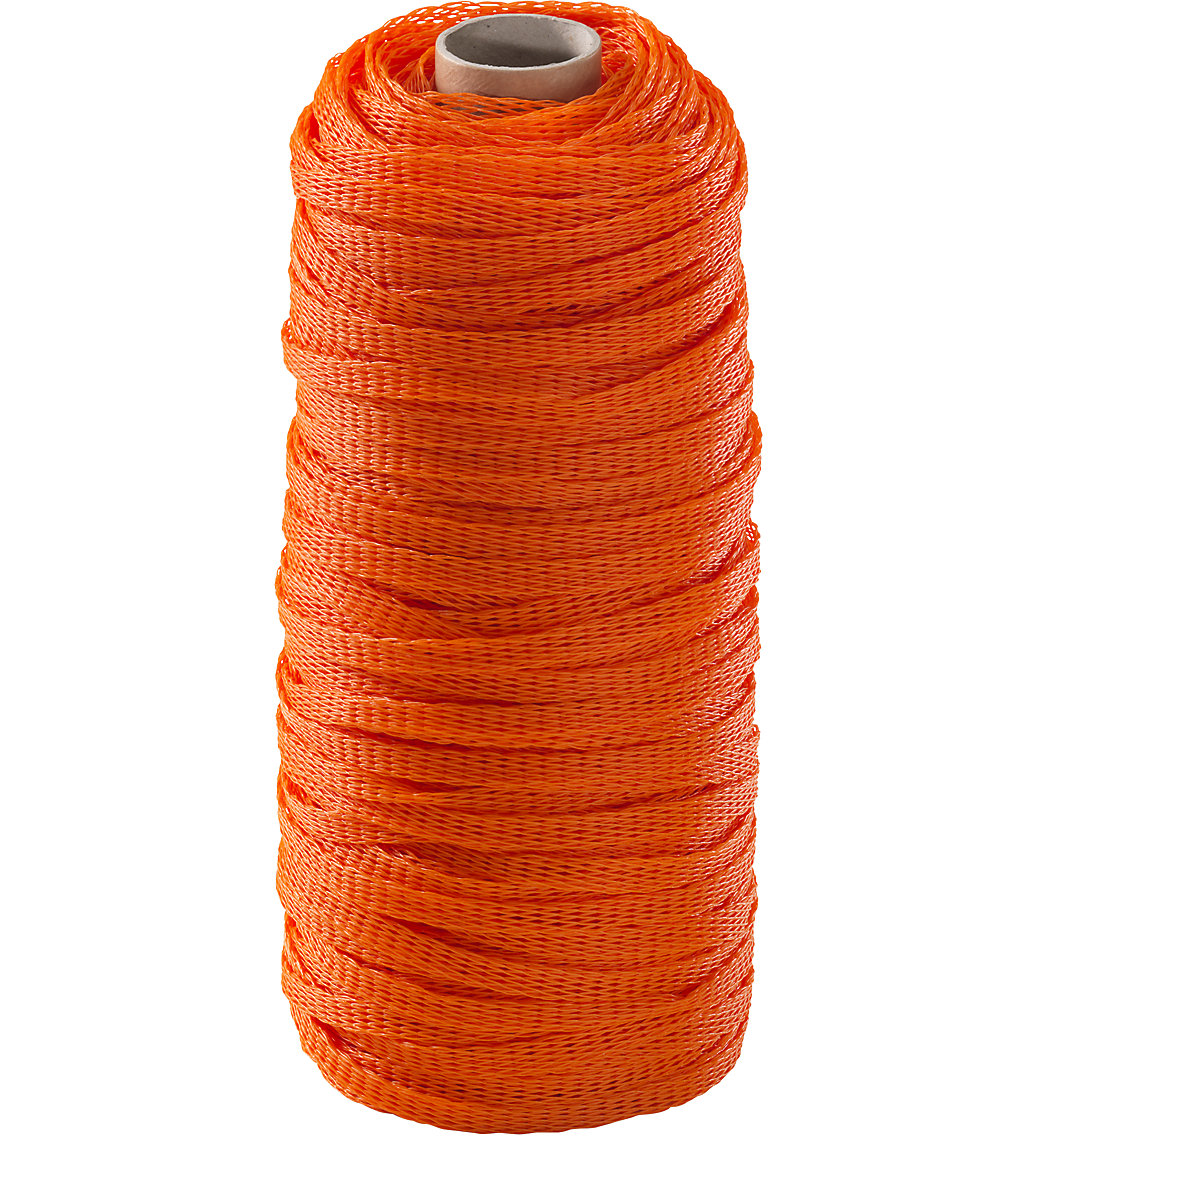 Materiaalbeschermingsnet, polyethyleen, 1 rol, oranje, voor Ø 7 – 15 mm-10